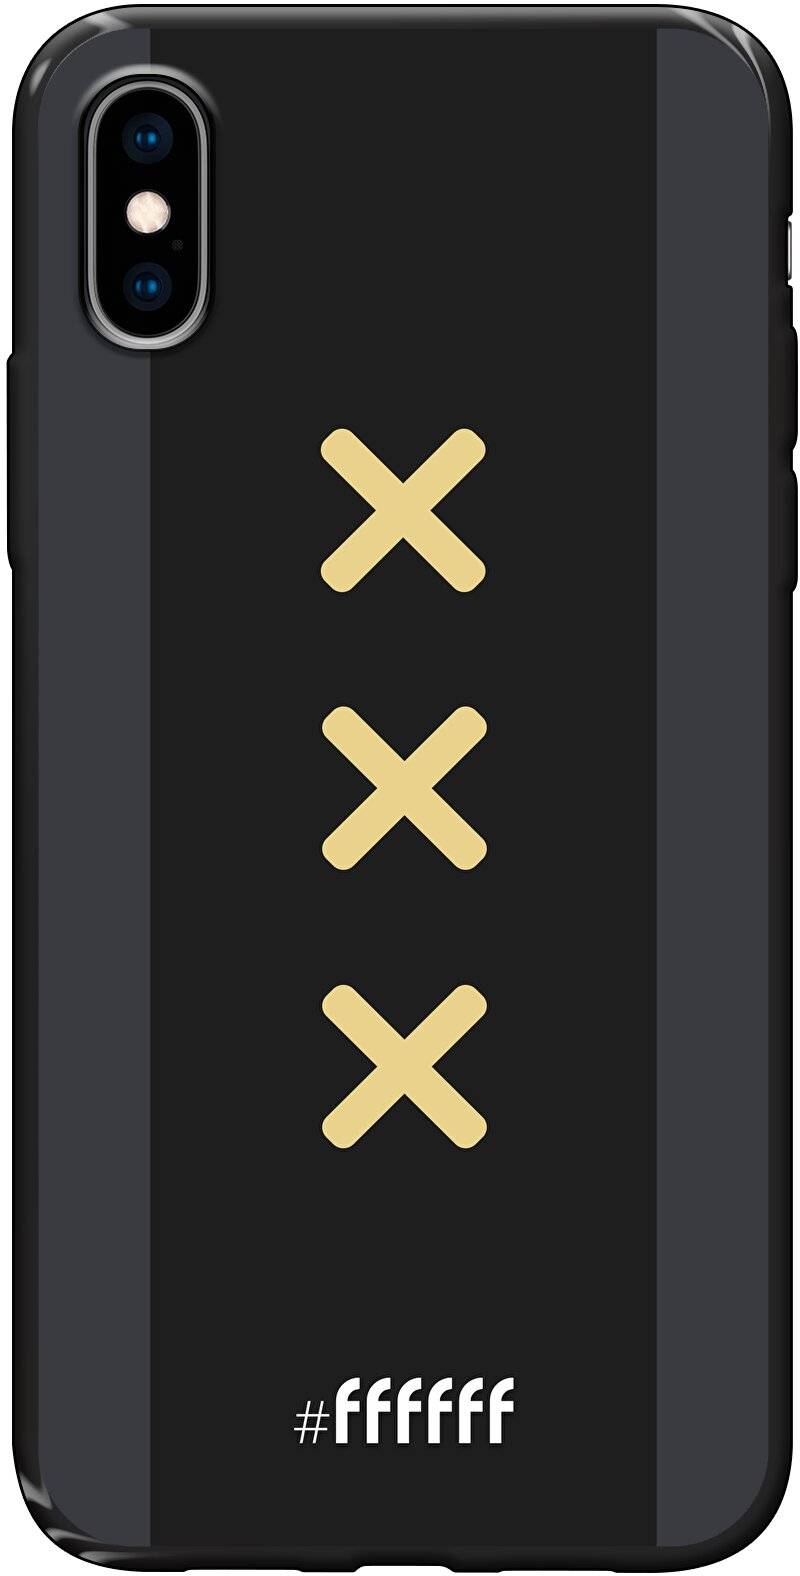 Ajax Europees Uitshirt 2020-2021 iPhone Xs